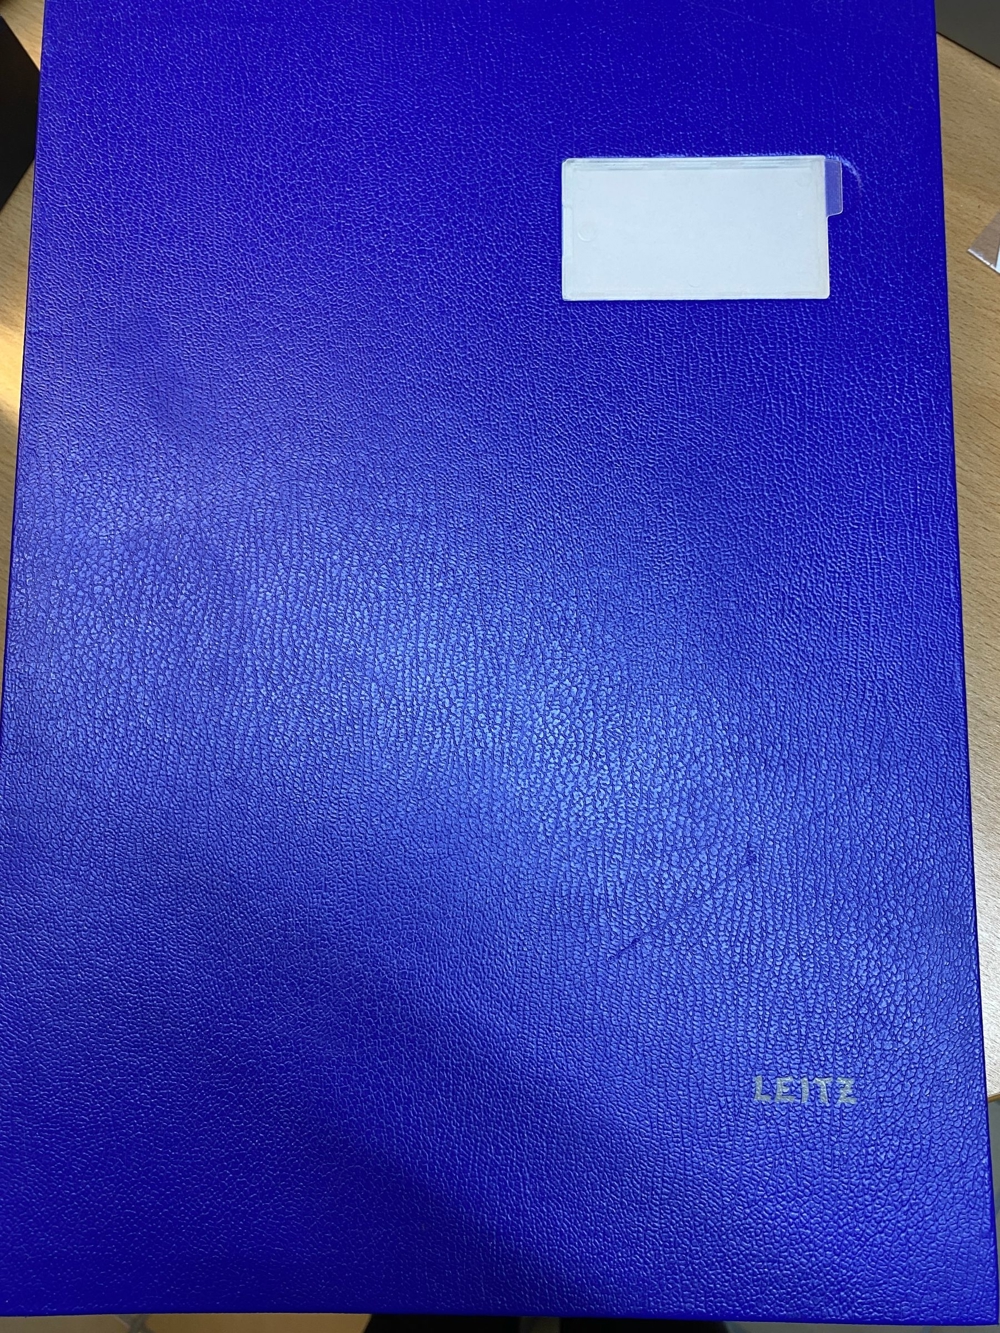 Unterschriftenmappe LEITZ 5700, blau, kaum gebraucht